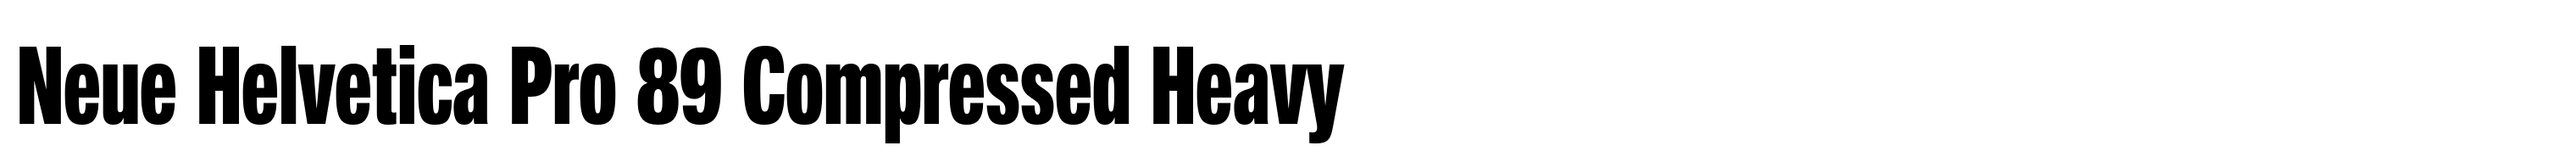 Neue Helvetica Pro 89 Compressed Heavy